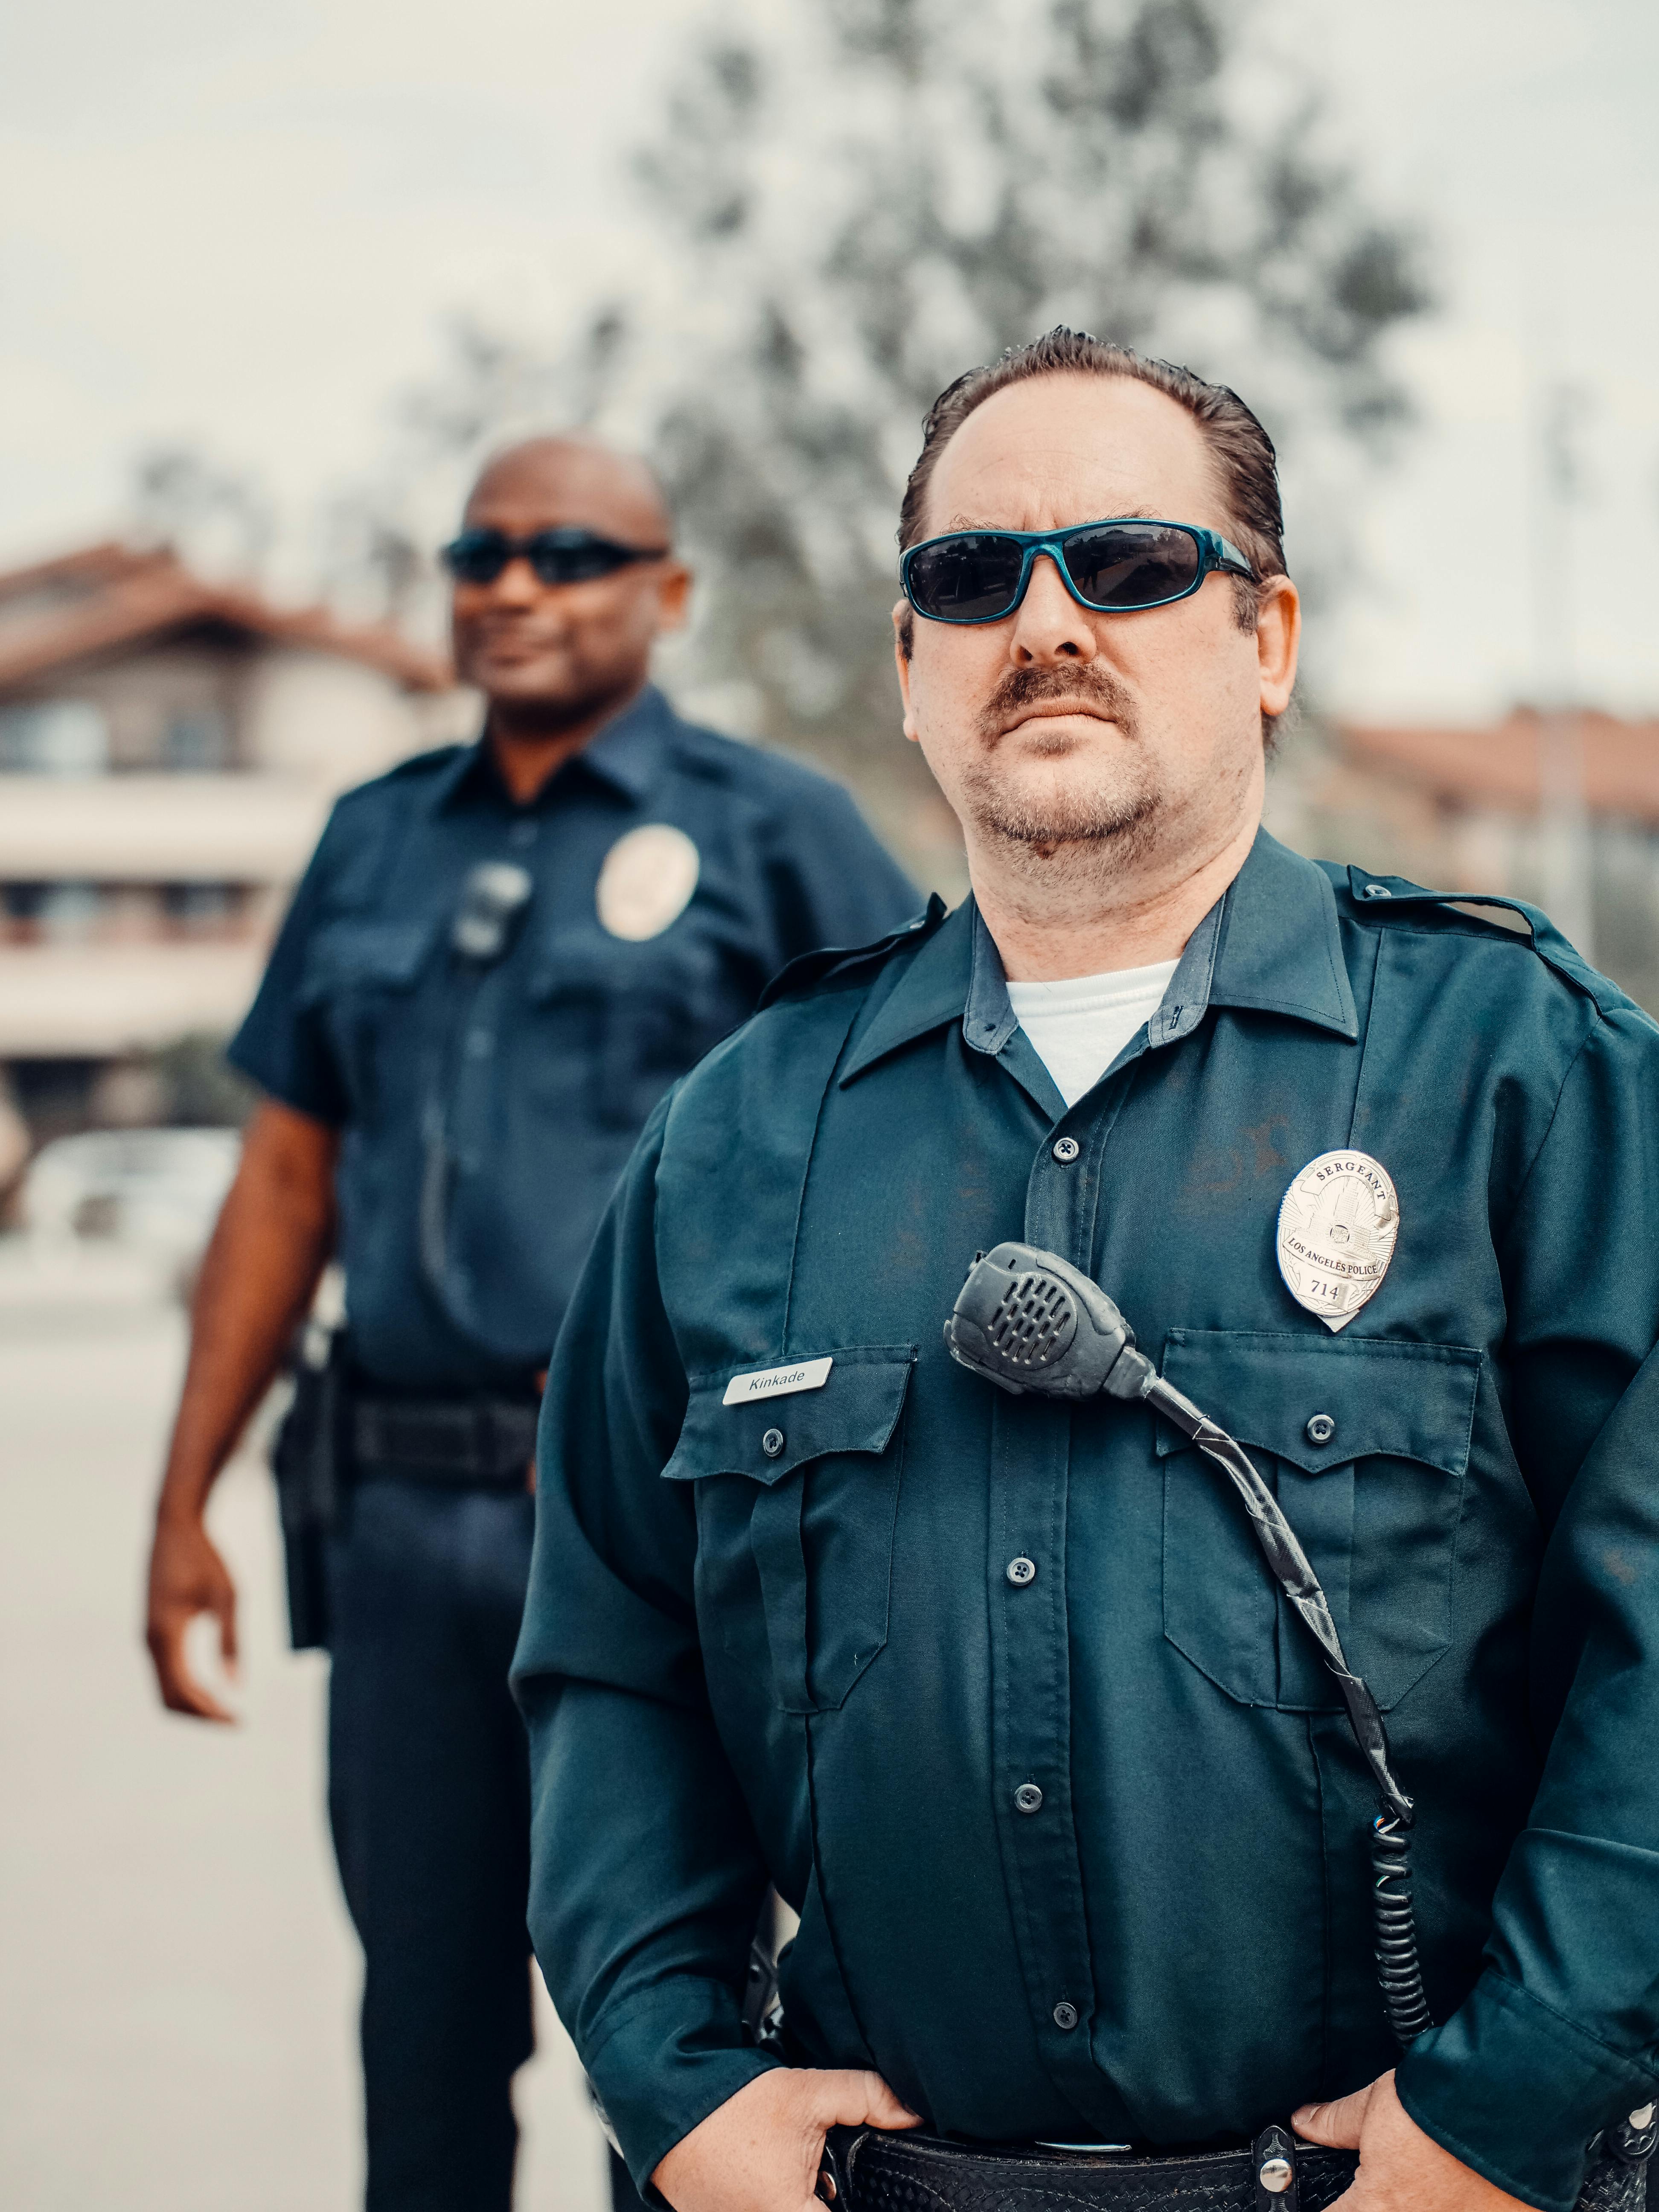 Ein düster aussehender Polizist steht hinter einem Kollegen | Quelle: Pexels